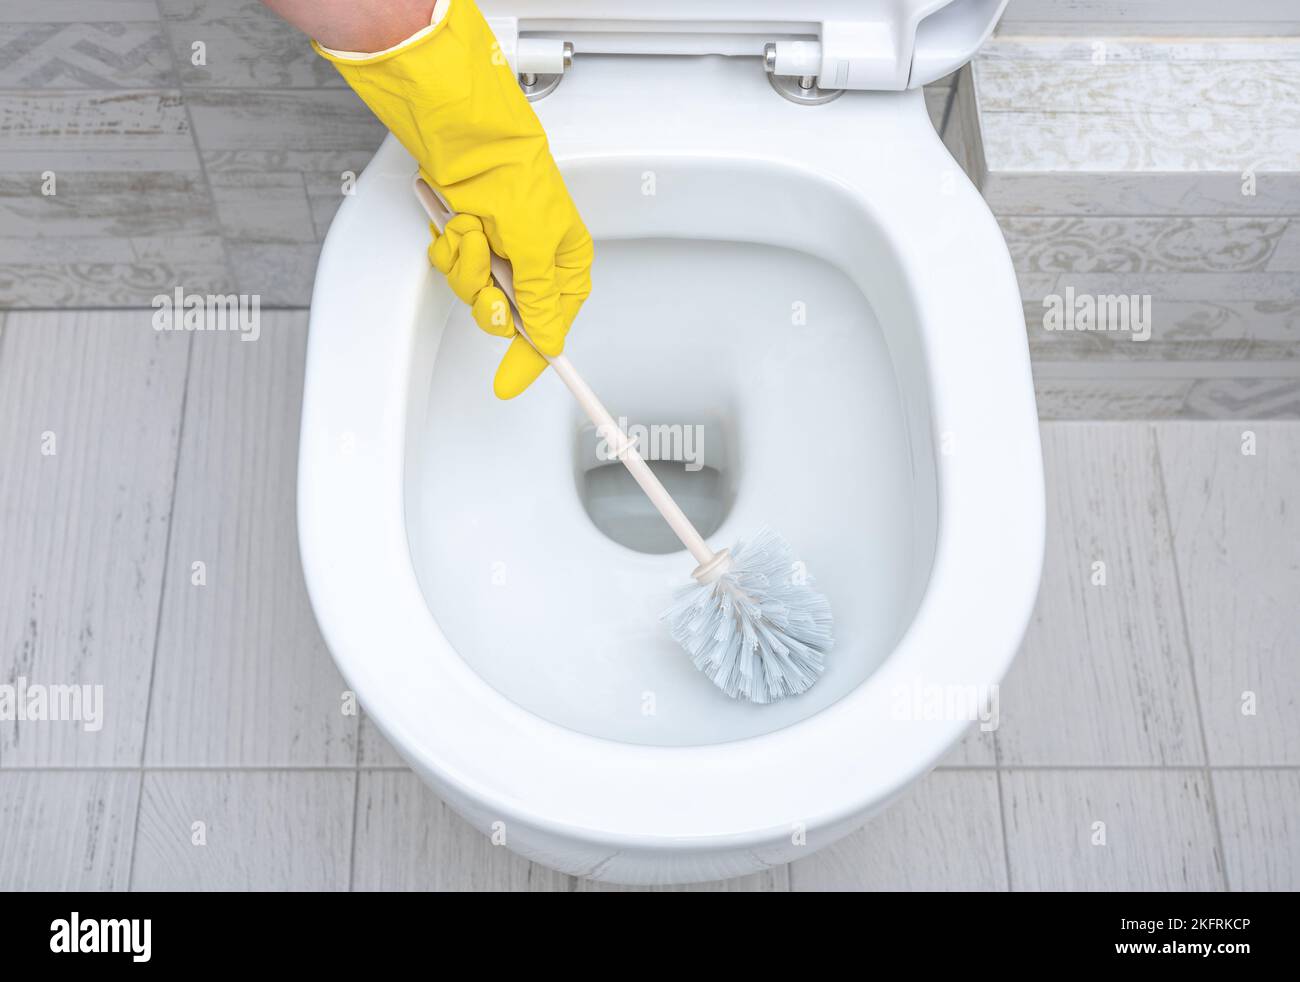 Servicio de limpieza a fondo. limpieza profesional de aseo. Cepille el inodoro para limpieza e higiene. Limpieza del inodoro. inodoro scr Foto de stock